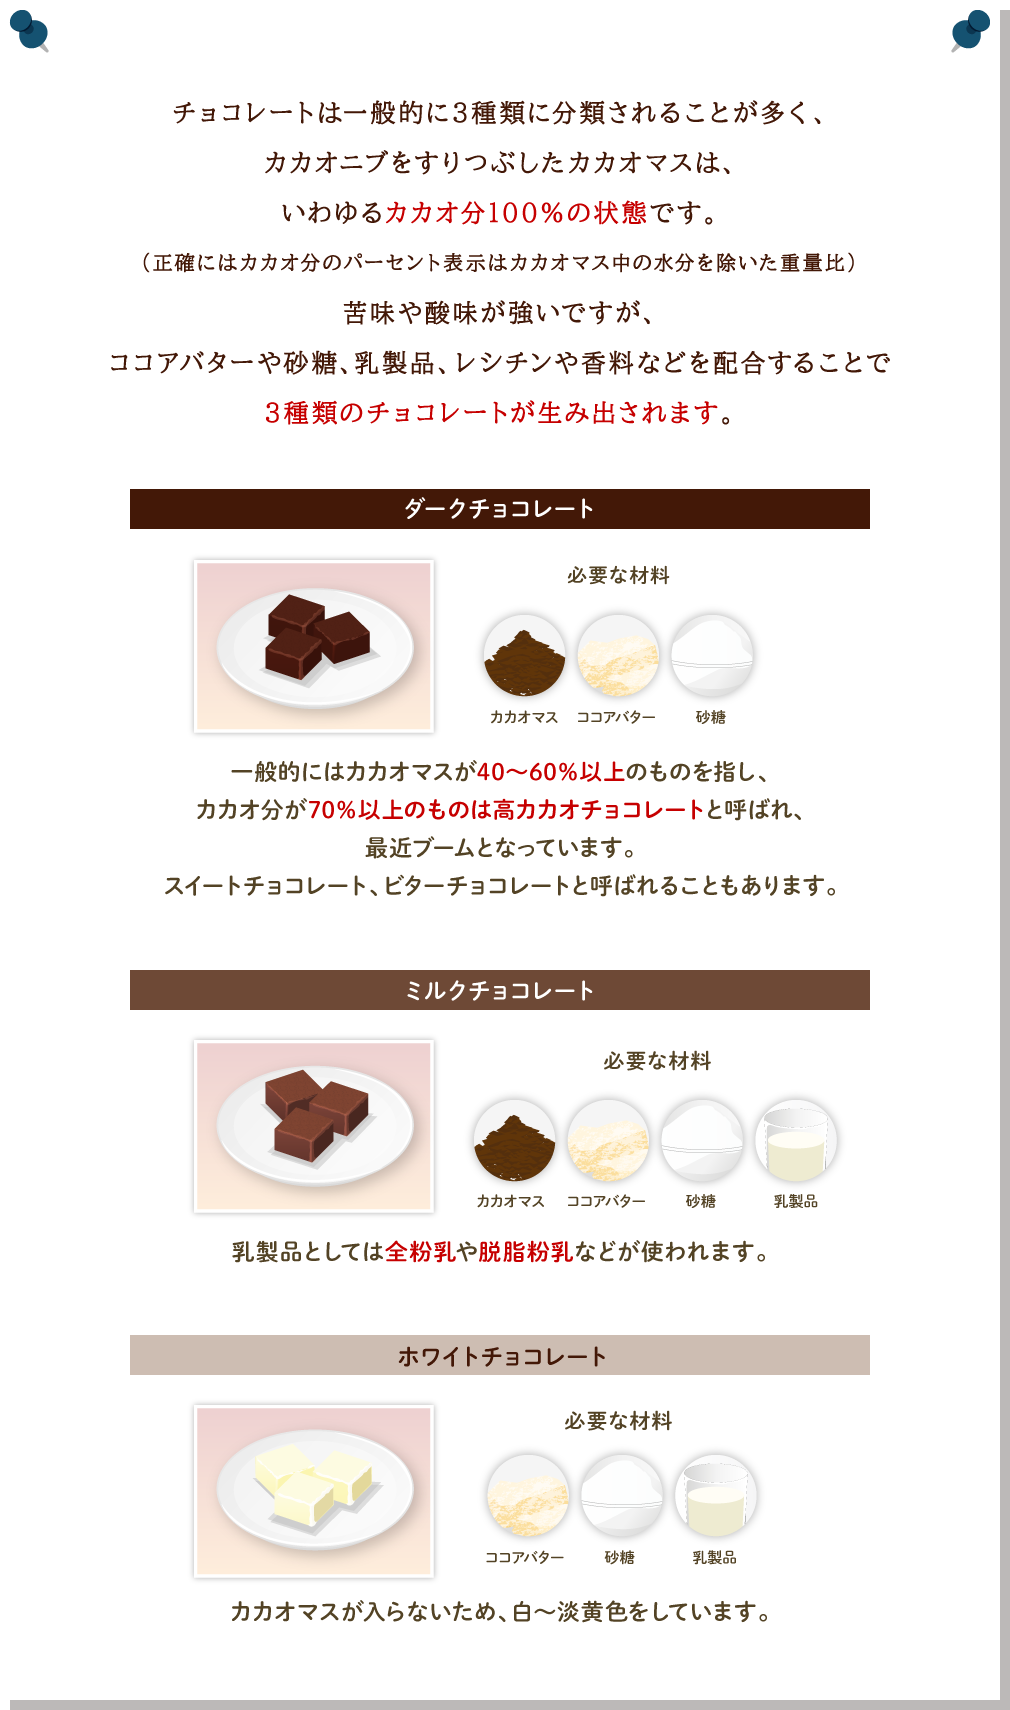 チョコレートは一般的に3種類に分類されることが多く、カカオニブをすりつぶしたカカオマスは、いわゆるカカオ分100％の状態です。